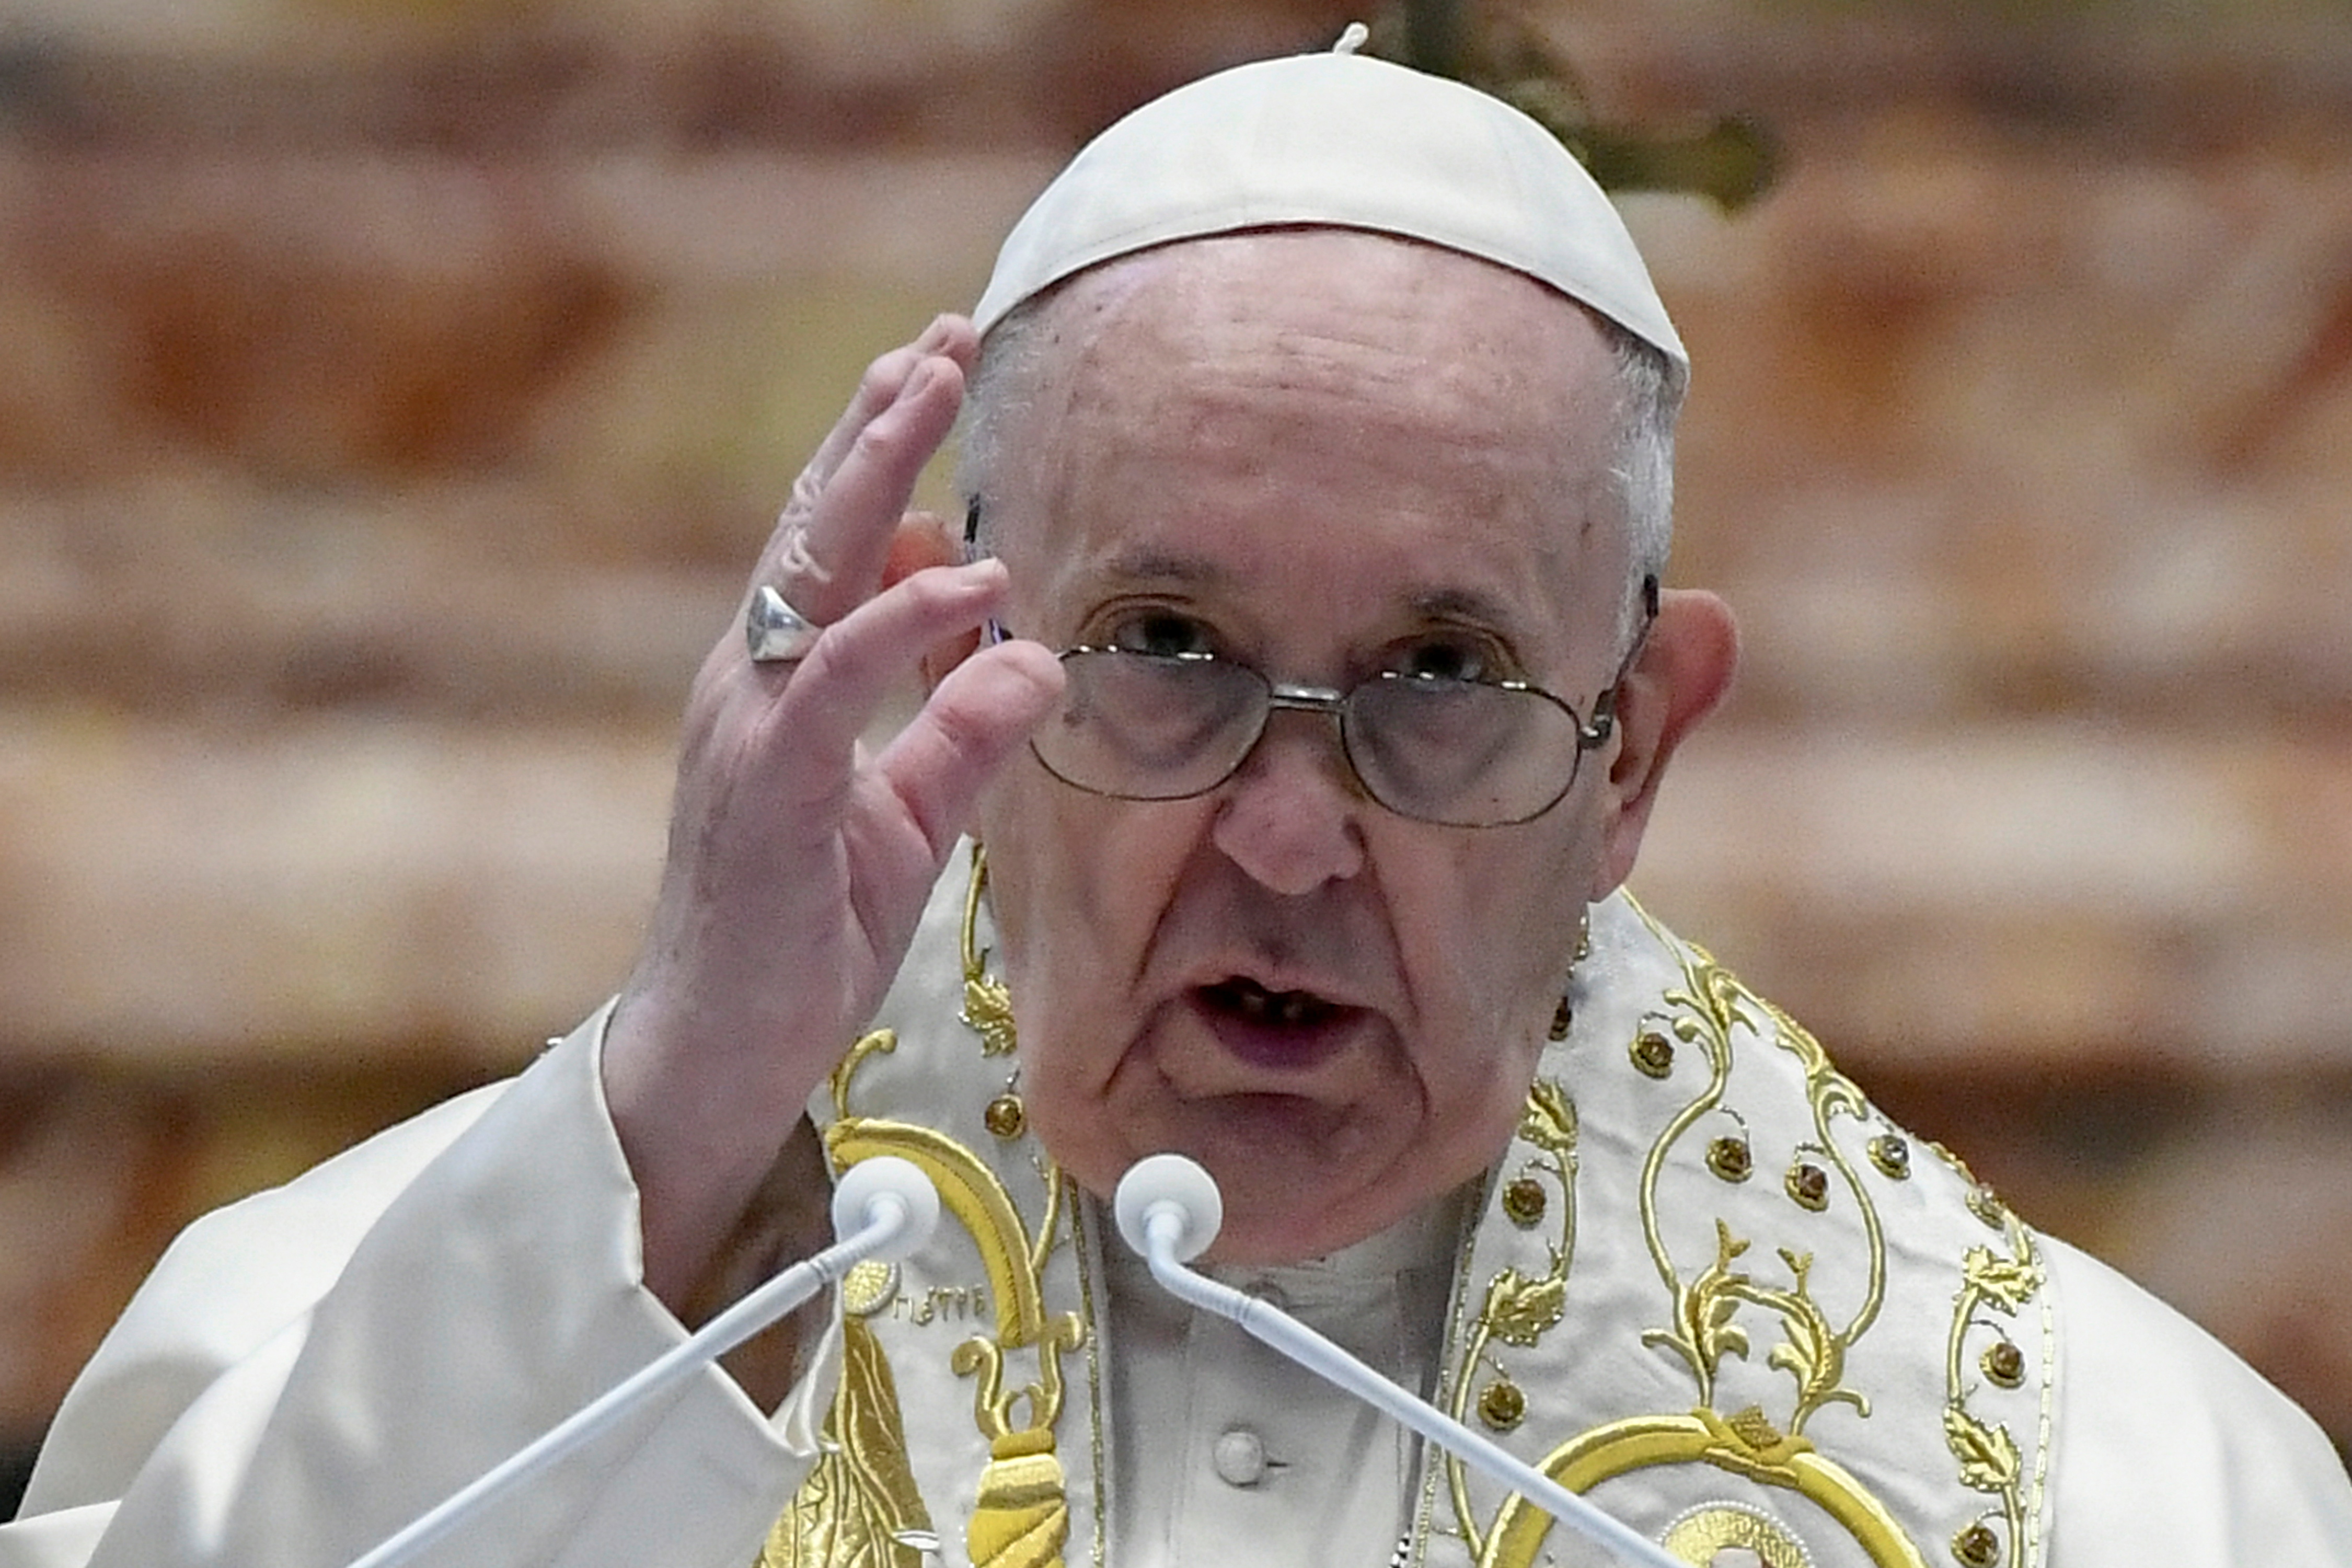 El papa Francisco critica “los nacionalismos cerrados y agresivos” contra los migrantes